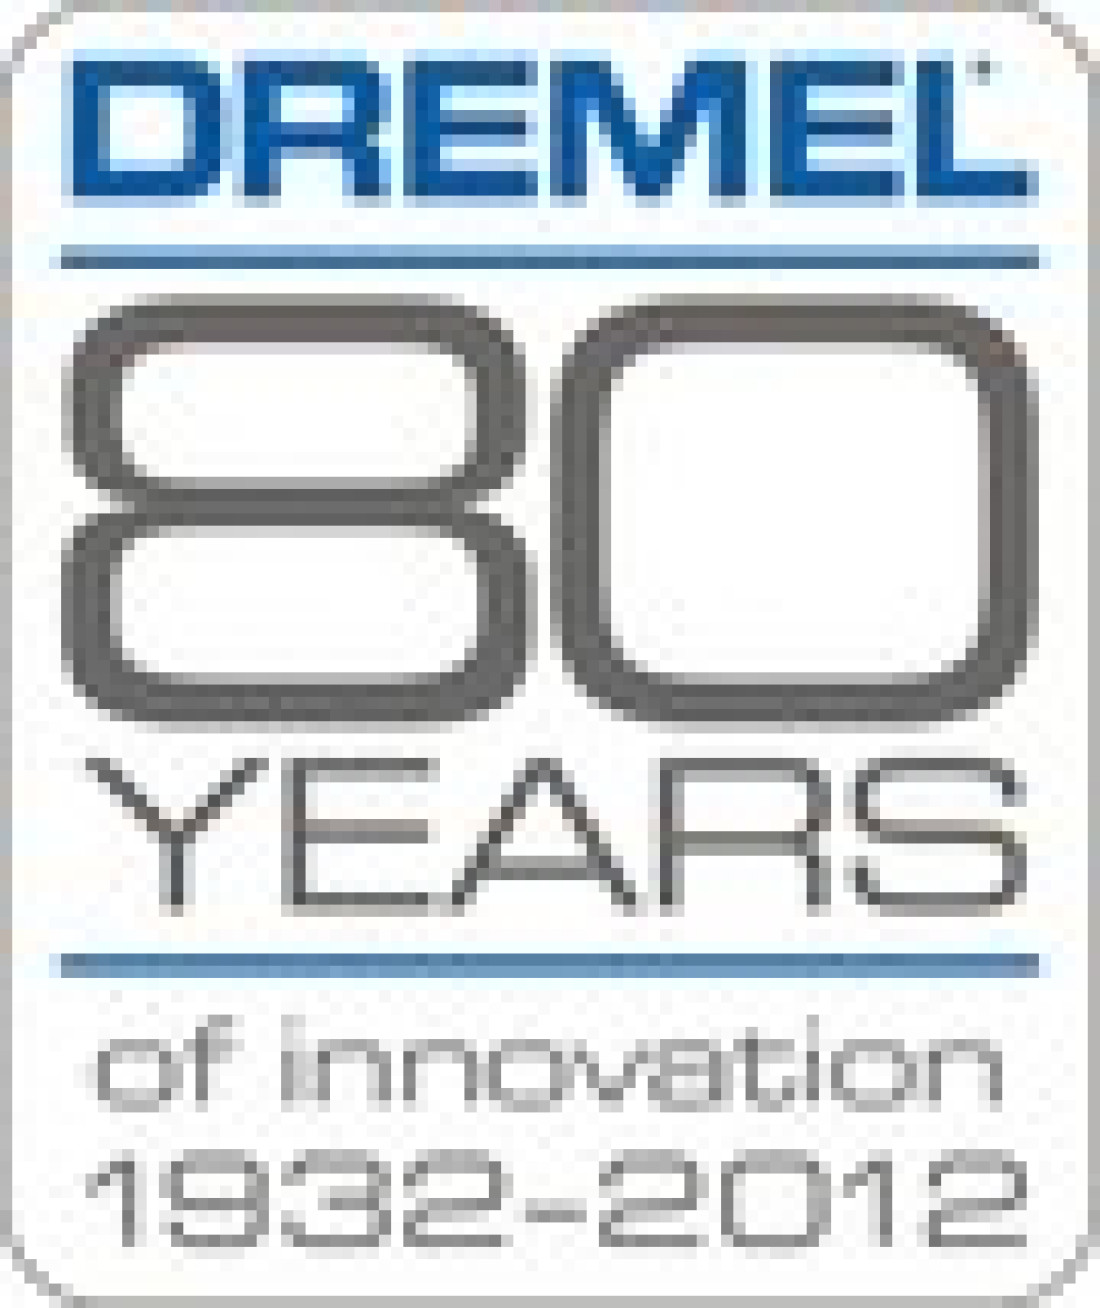 80 lat obecności marki Dremel na rynku